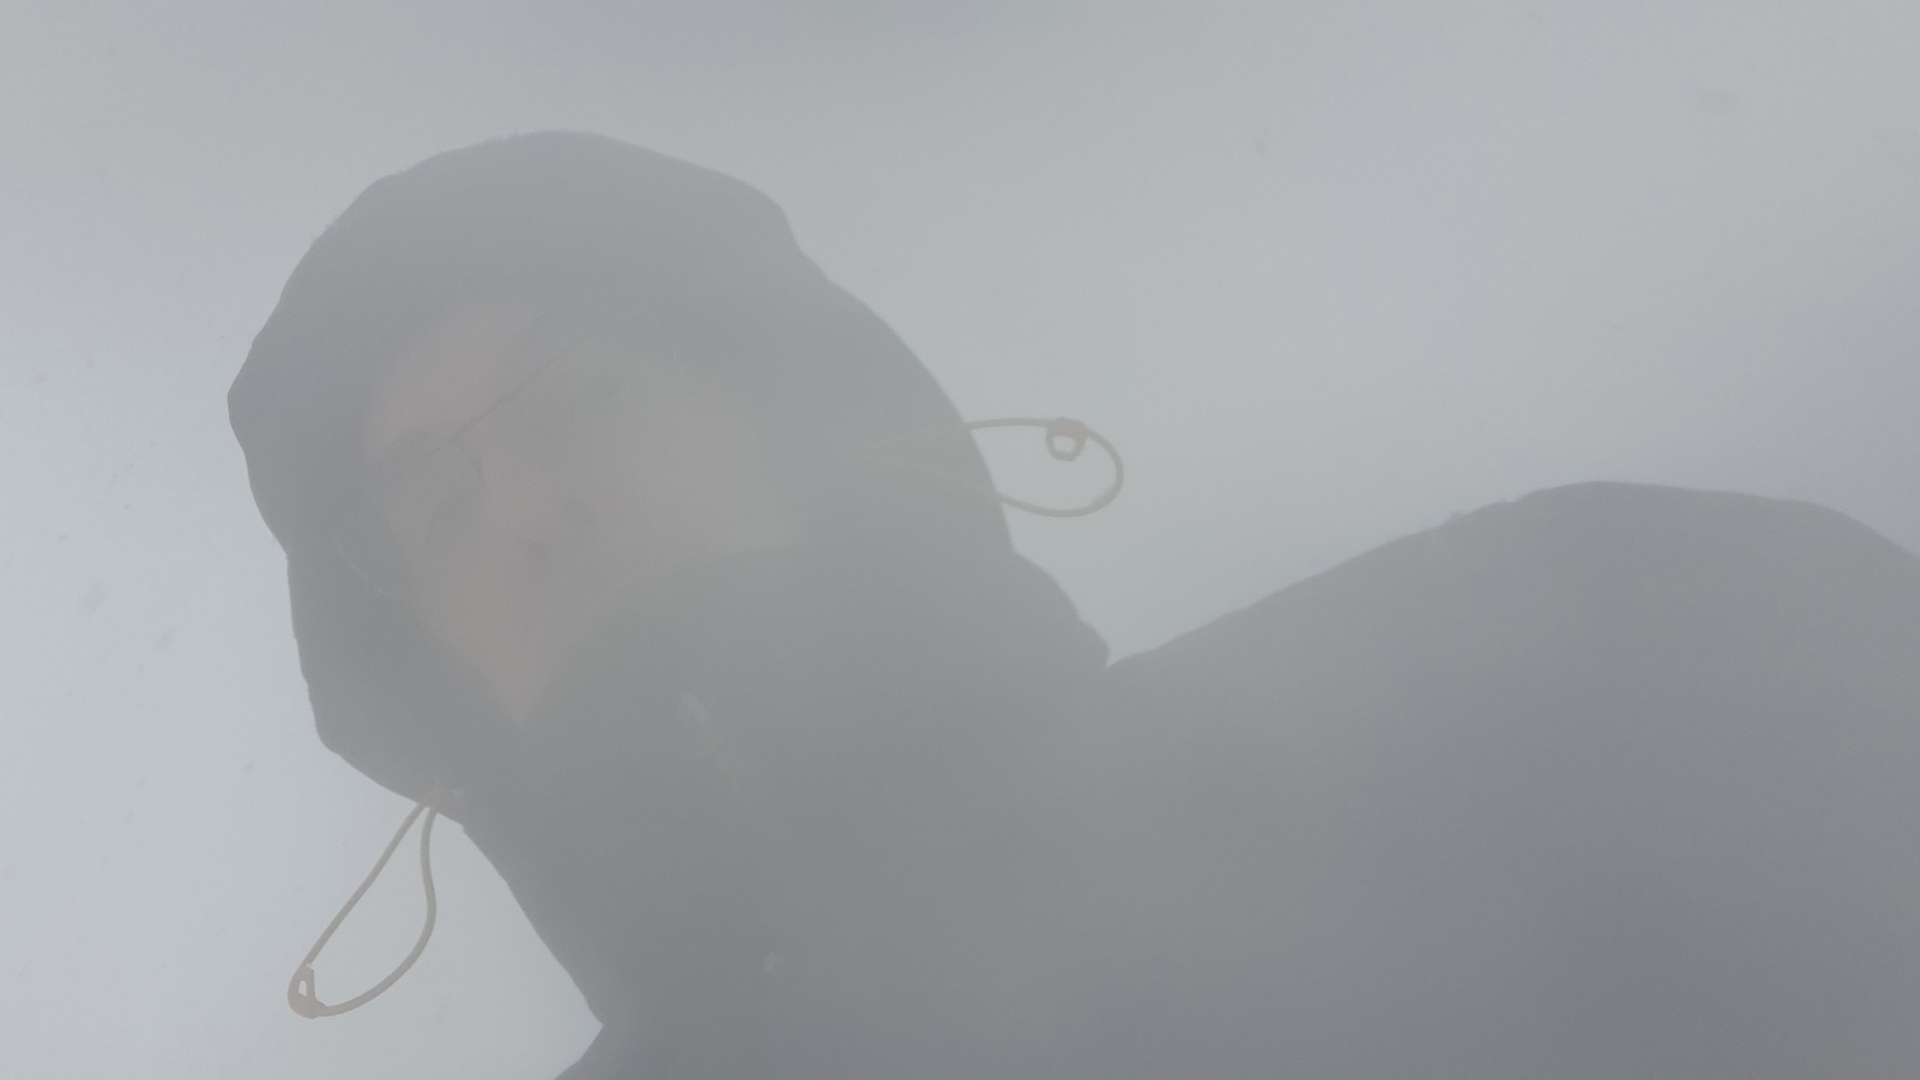 Fotostrecke Nebel Abbildung 27: Echt dichter Nebel